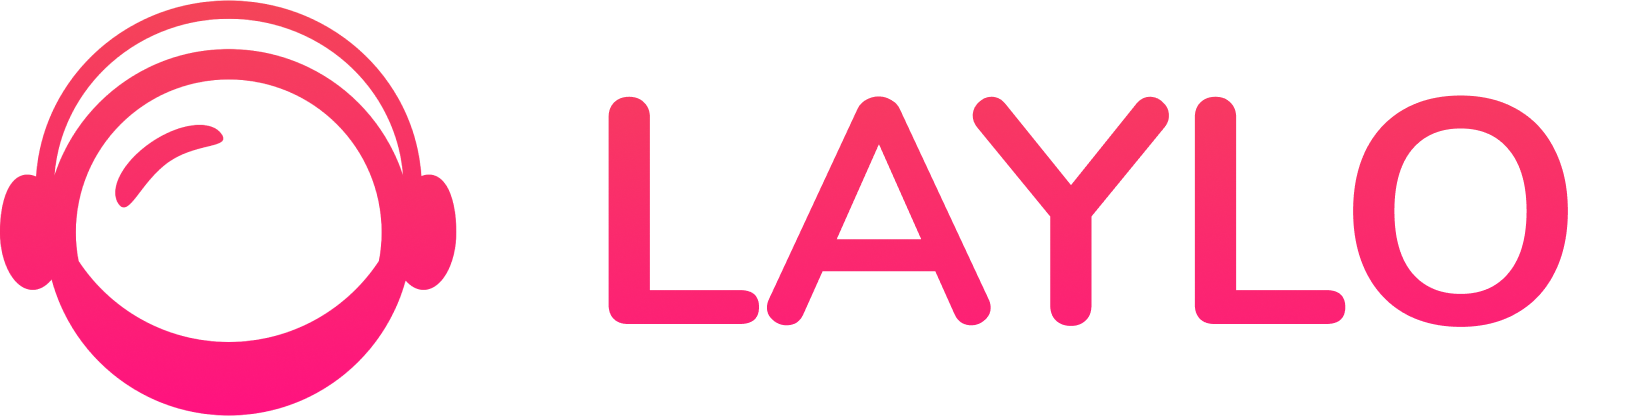 laylo logo